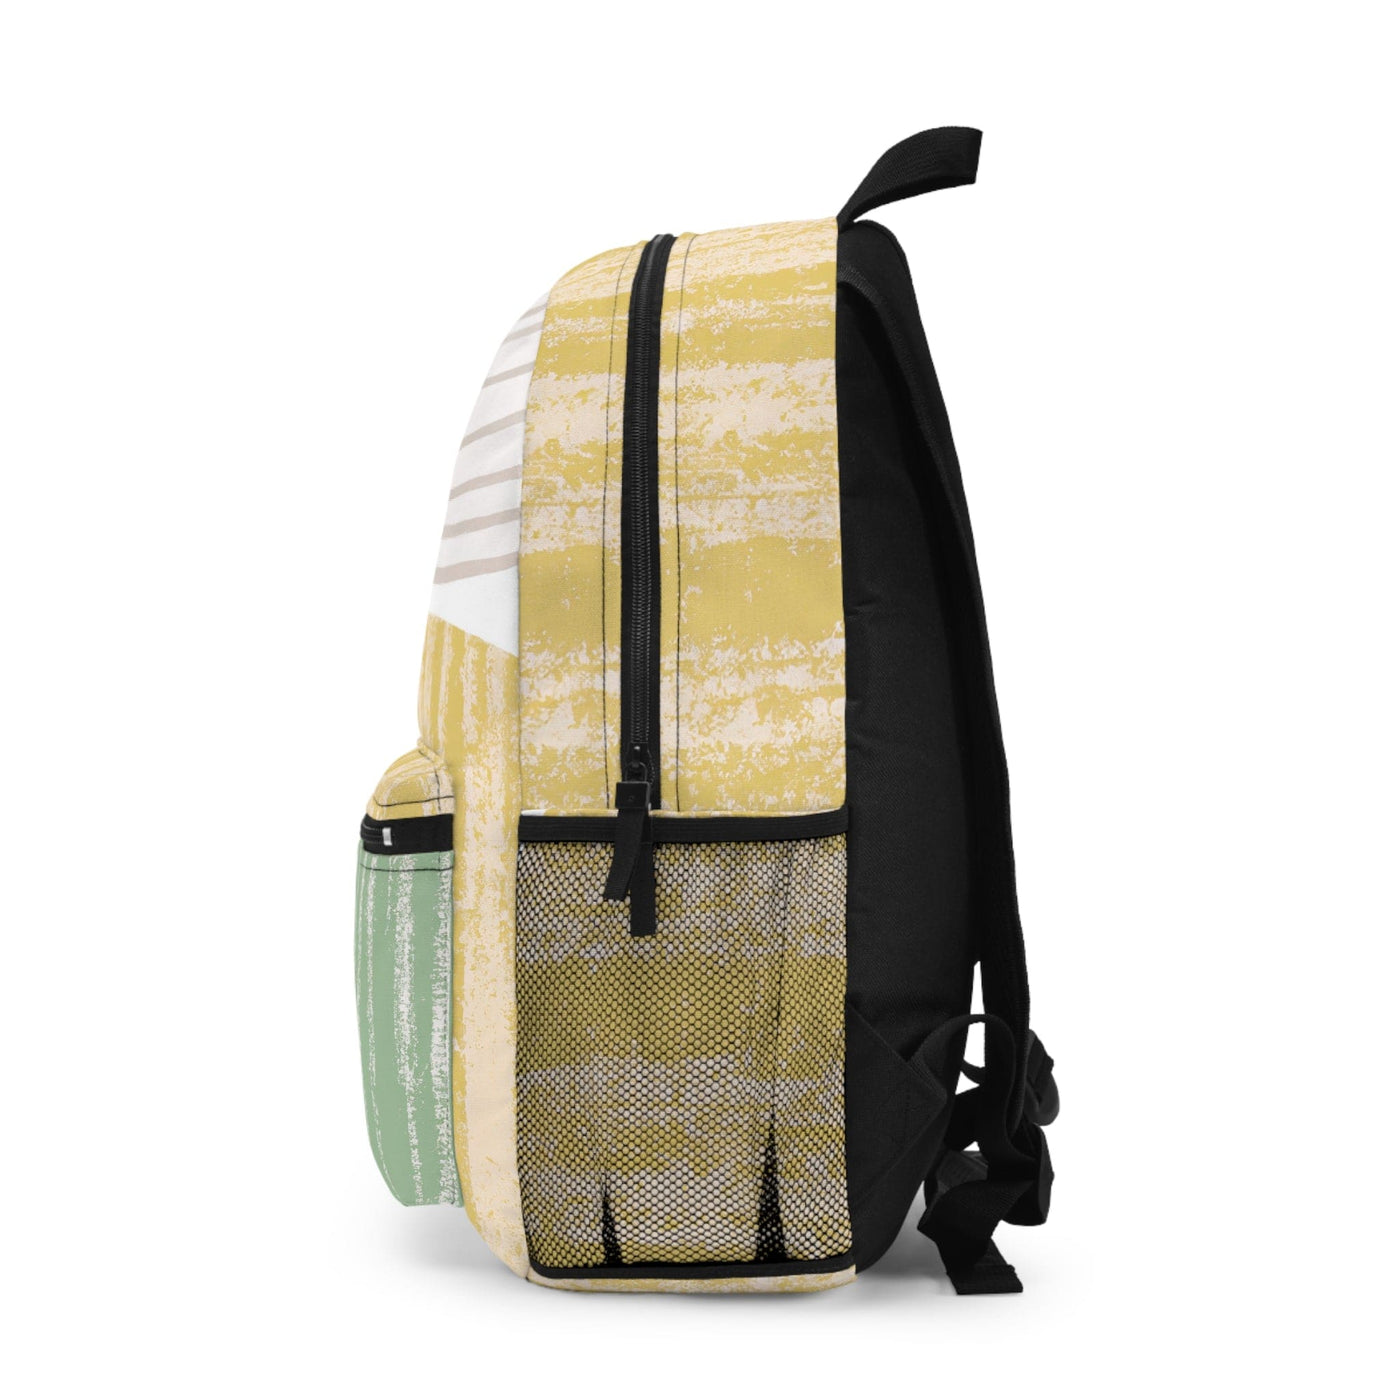 Backpack Work/school/leisure - Waterproof Mint Green Textured Look Boho Print